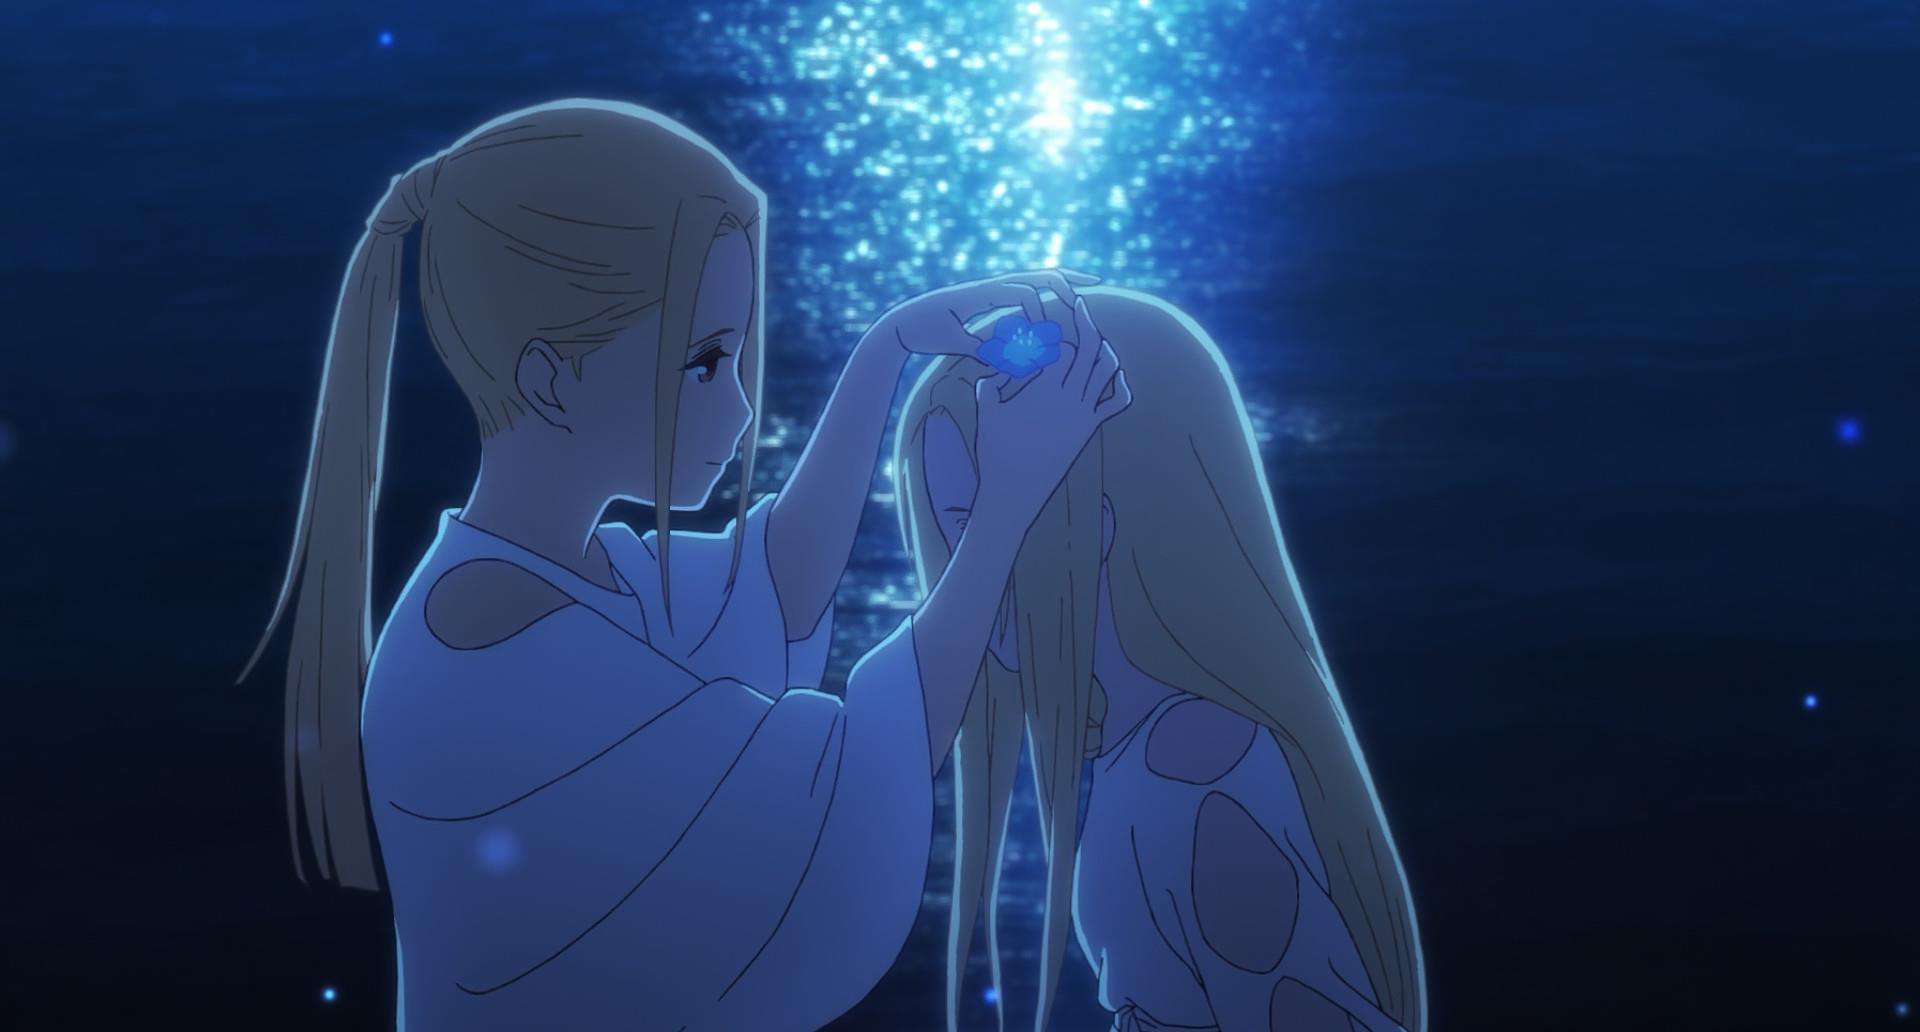 《朝花夕誓》是一部非常唯美的动画电影,故事围绕着相遇与离别,时光与